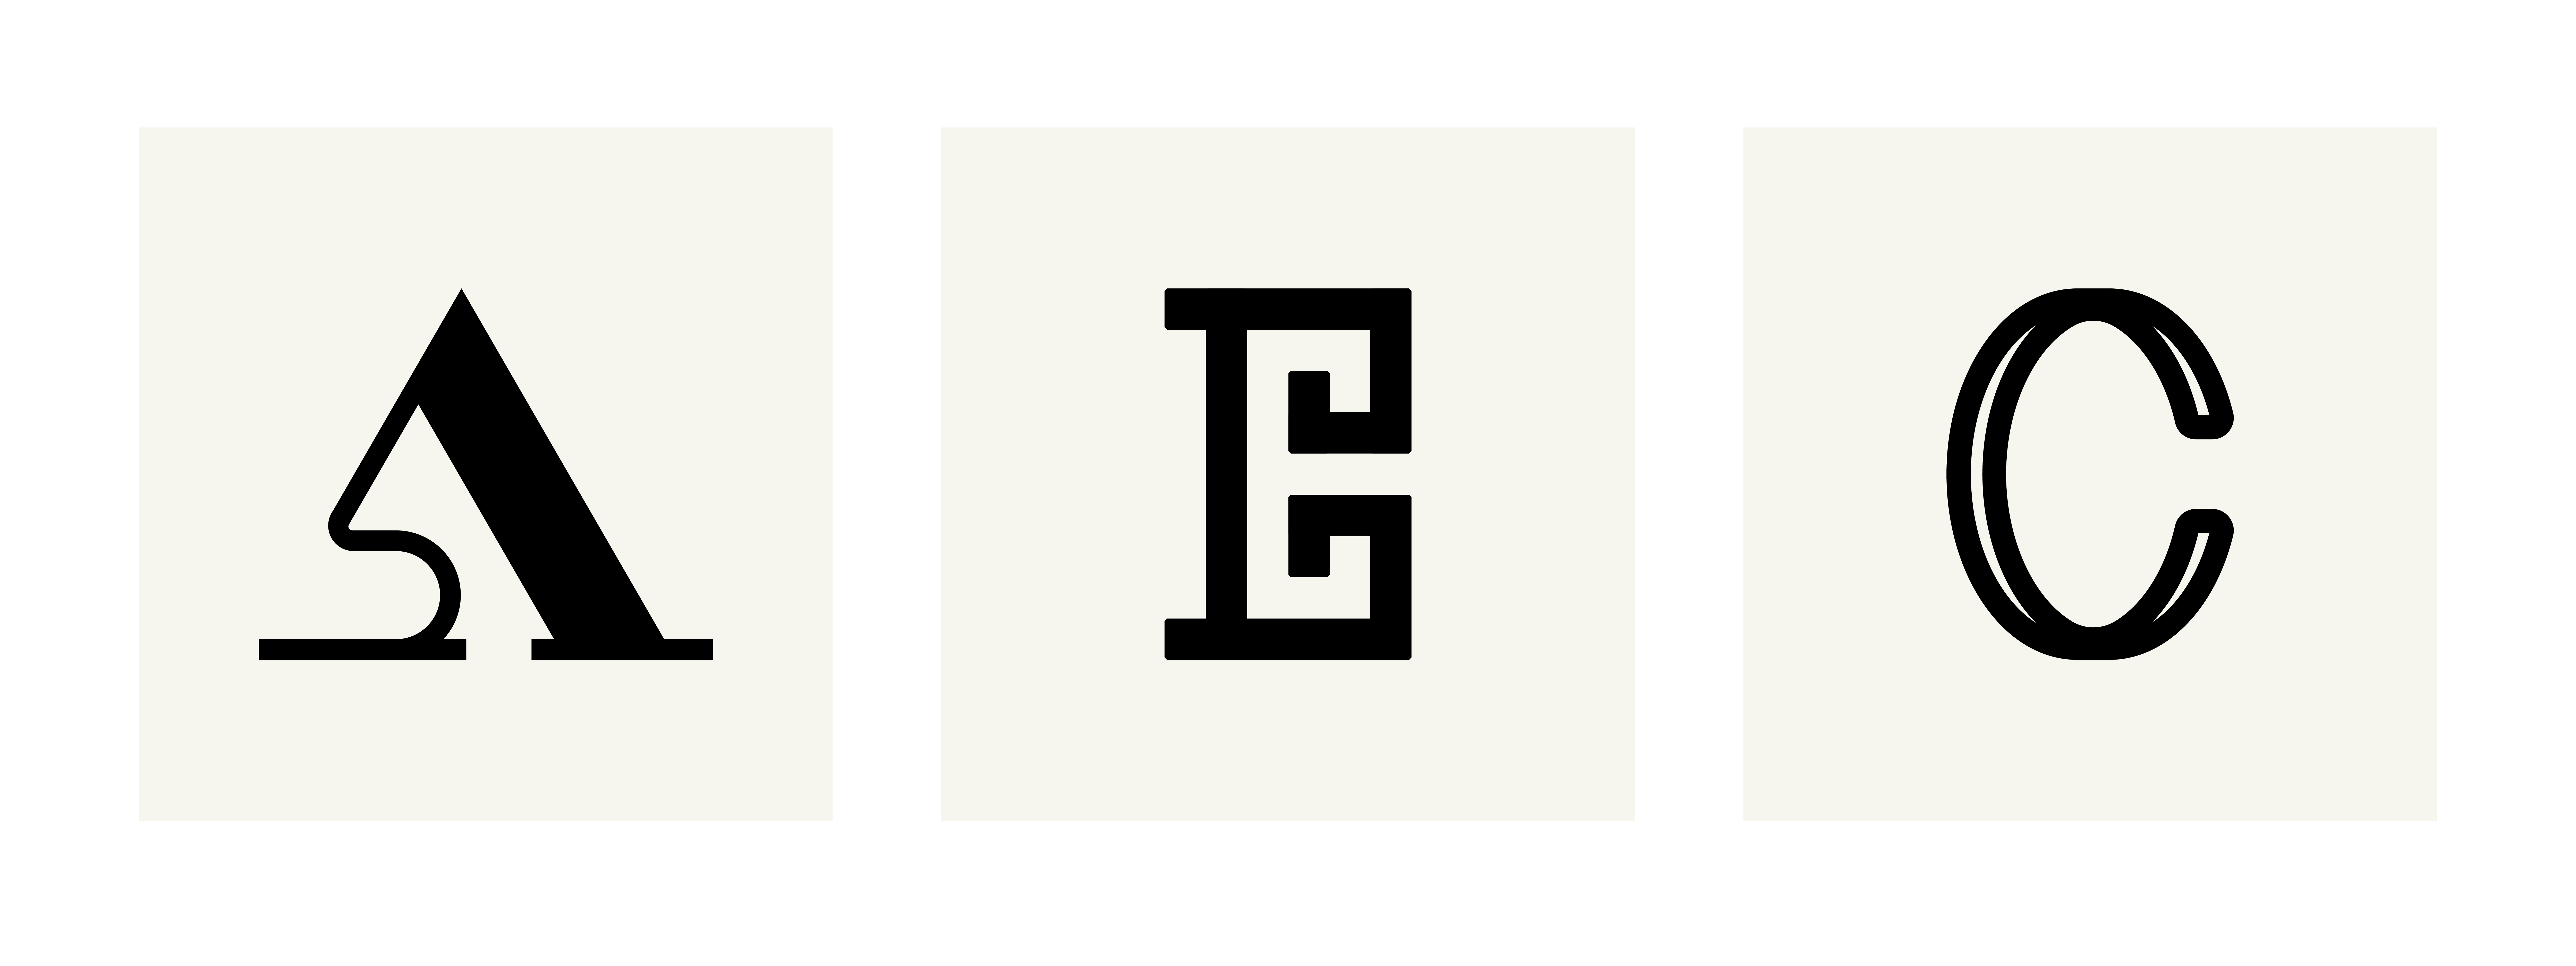 julie-pirovani-typographie-abecedaire-libre-planche-ABC